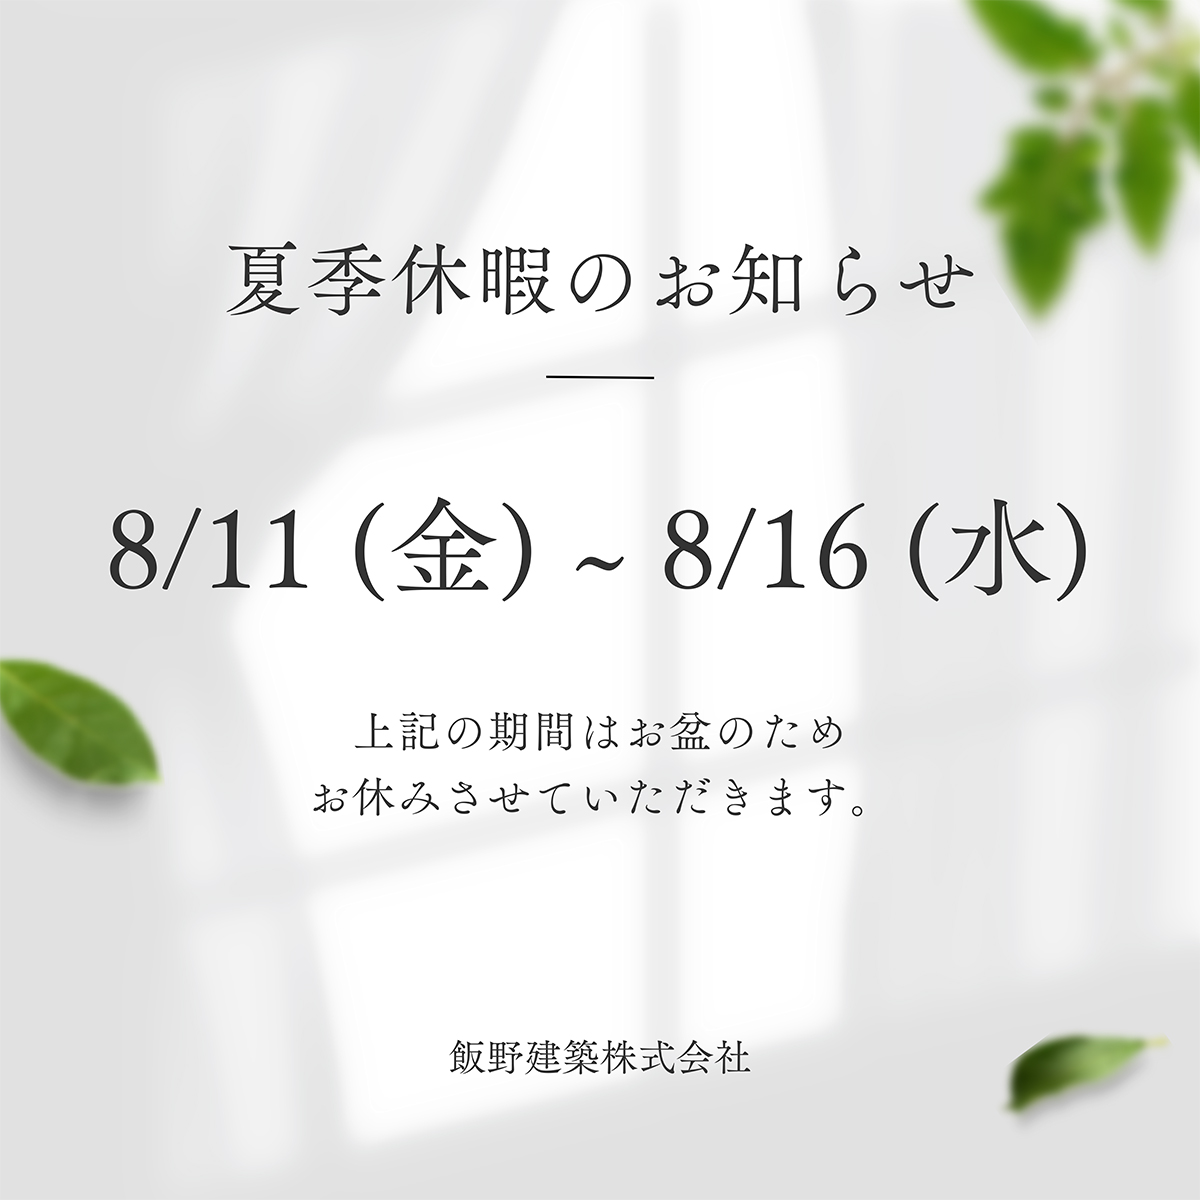 夏季休暇のお知らせ　8月11日(金)〜16日(水)まで